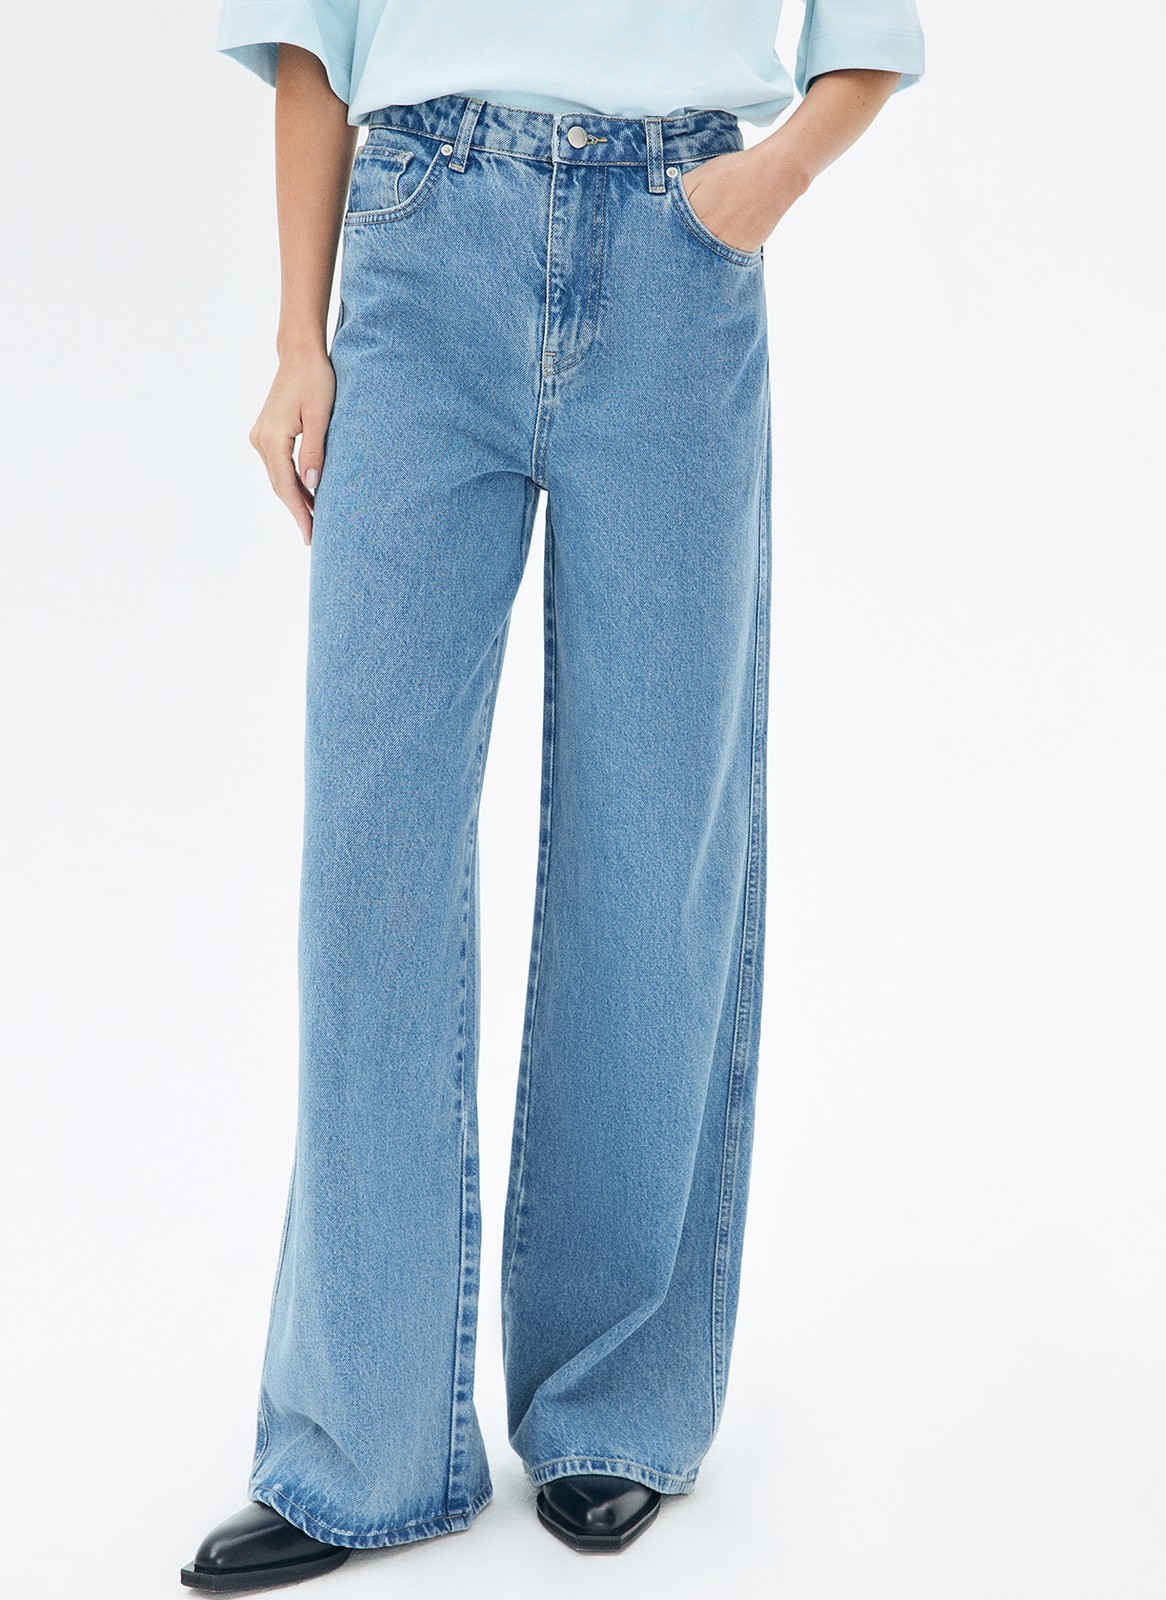 Брюки из джинсовой ткани для женщины синий цвет купить в All We Need